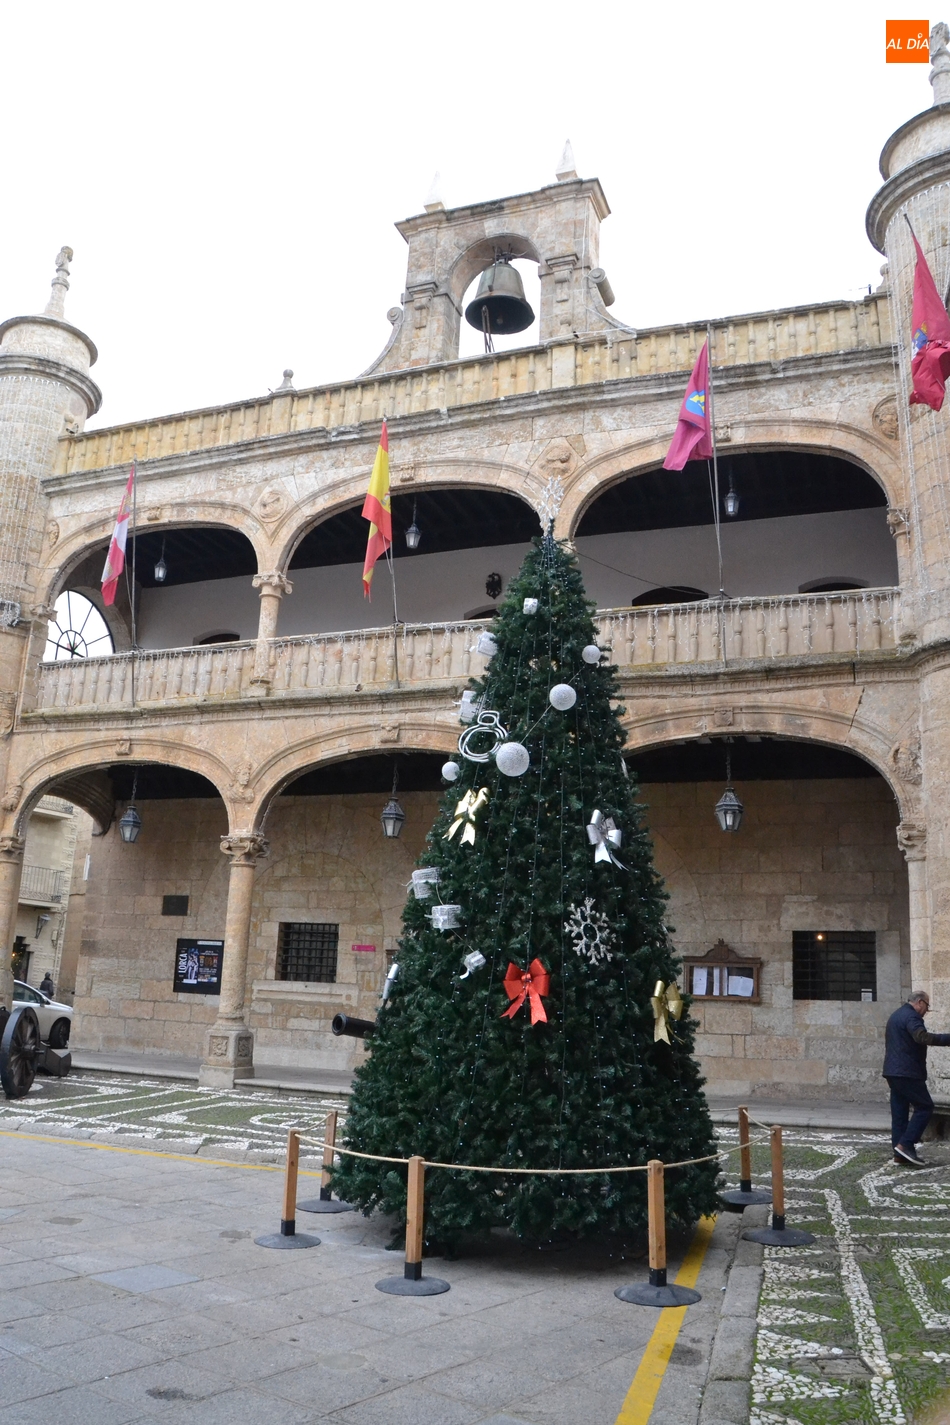 Foto 2 - Colocado el Árbol de Navidad de la Plaza Mayor, que estrena posición  